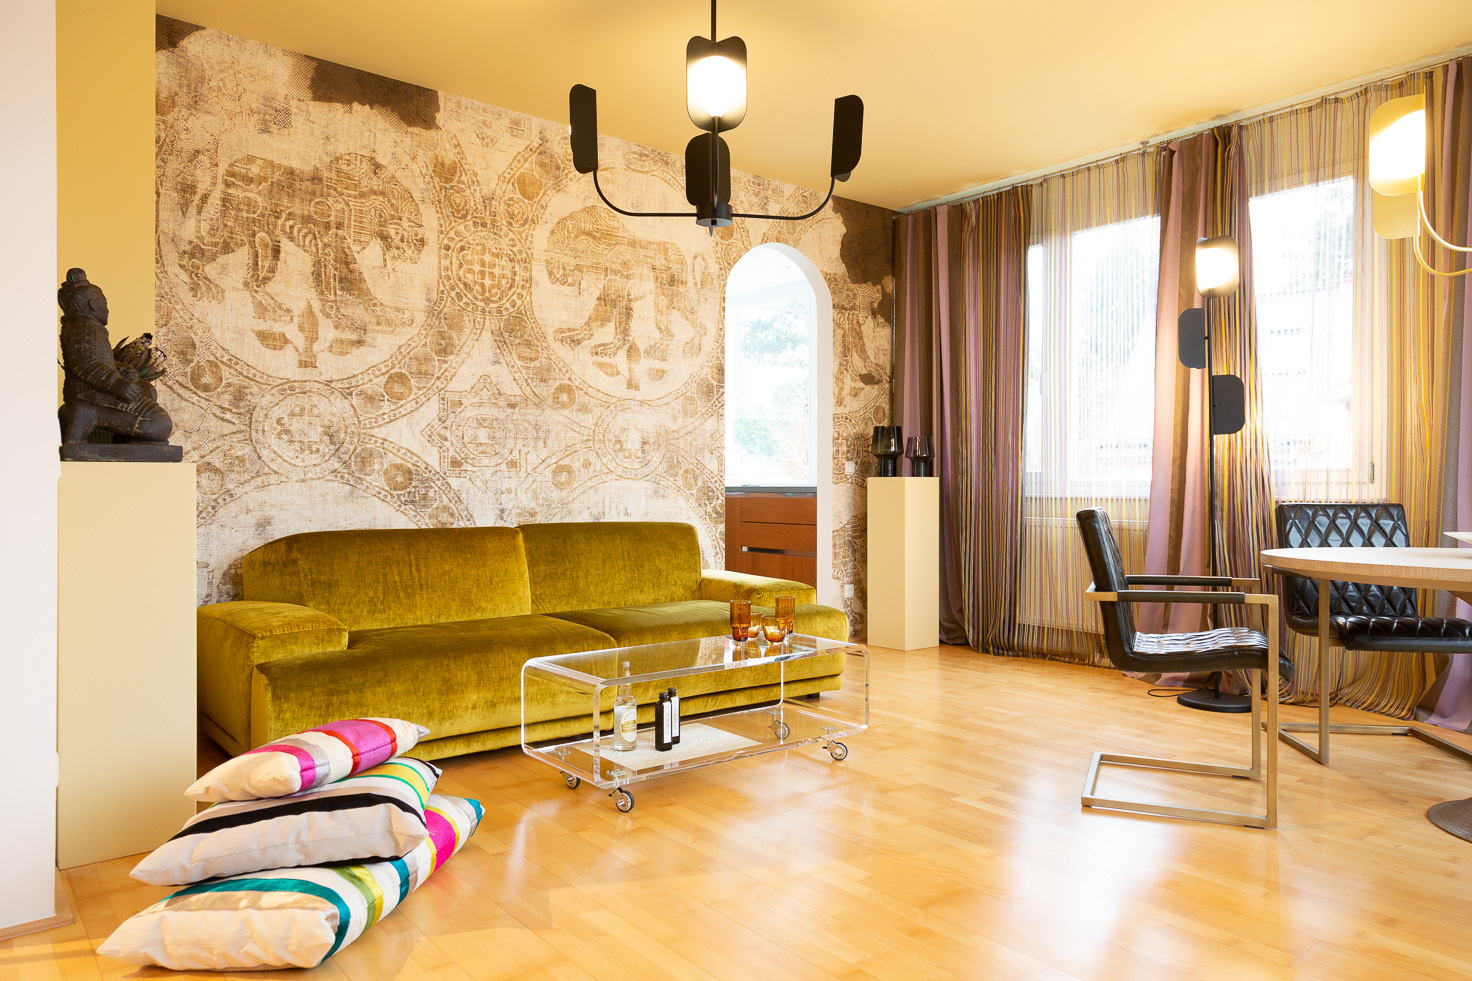 Wohnzimmer mit Interior Design in Gelb- und Ockertönen, Tapete mit Großkatzenmotiv, Asiatische Dekorationselemente und ausgefallenen Deckenlampen.